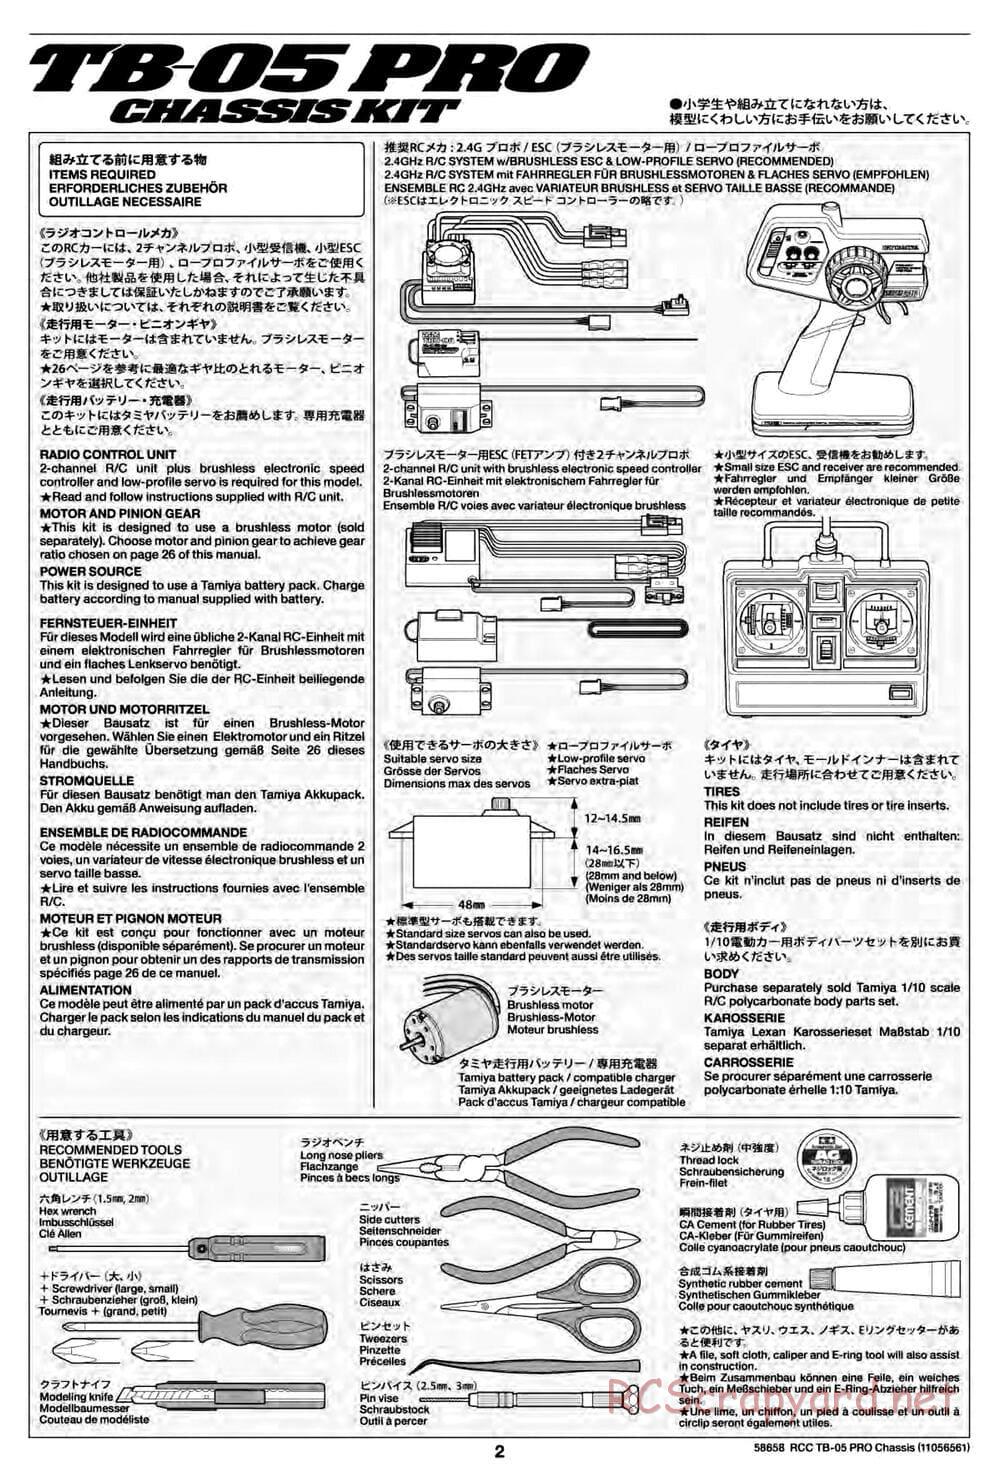 Tamiya - TB-05 Pro Chassis - Manual - Page 2